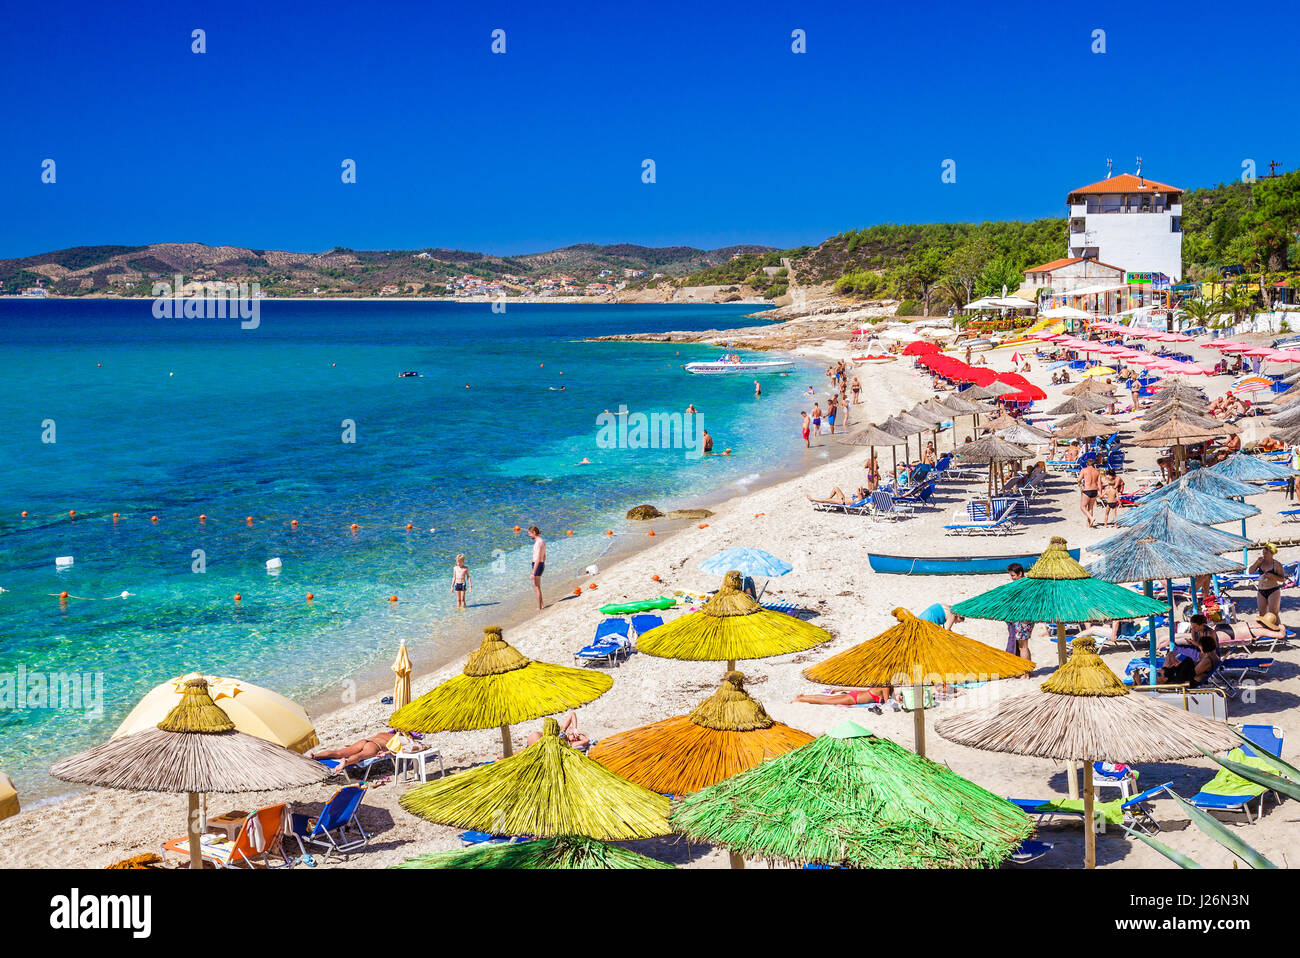 Griechenland, Thassos - 19 September: Schöne Pefkari Beach in der Nähe von Potos, Touristen genießen einen schönen Sommertag am Strand auf Thassos am 19. September 2013 Stockfoto